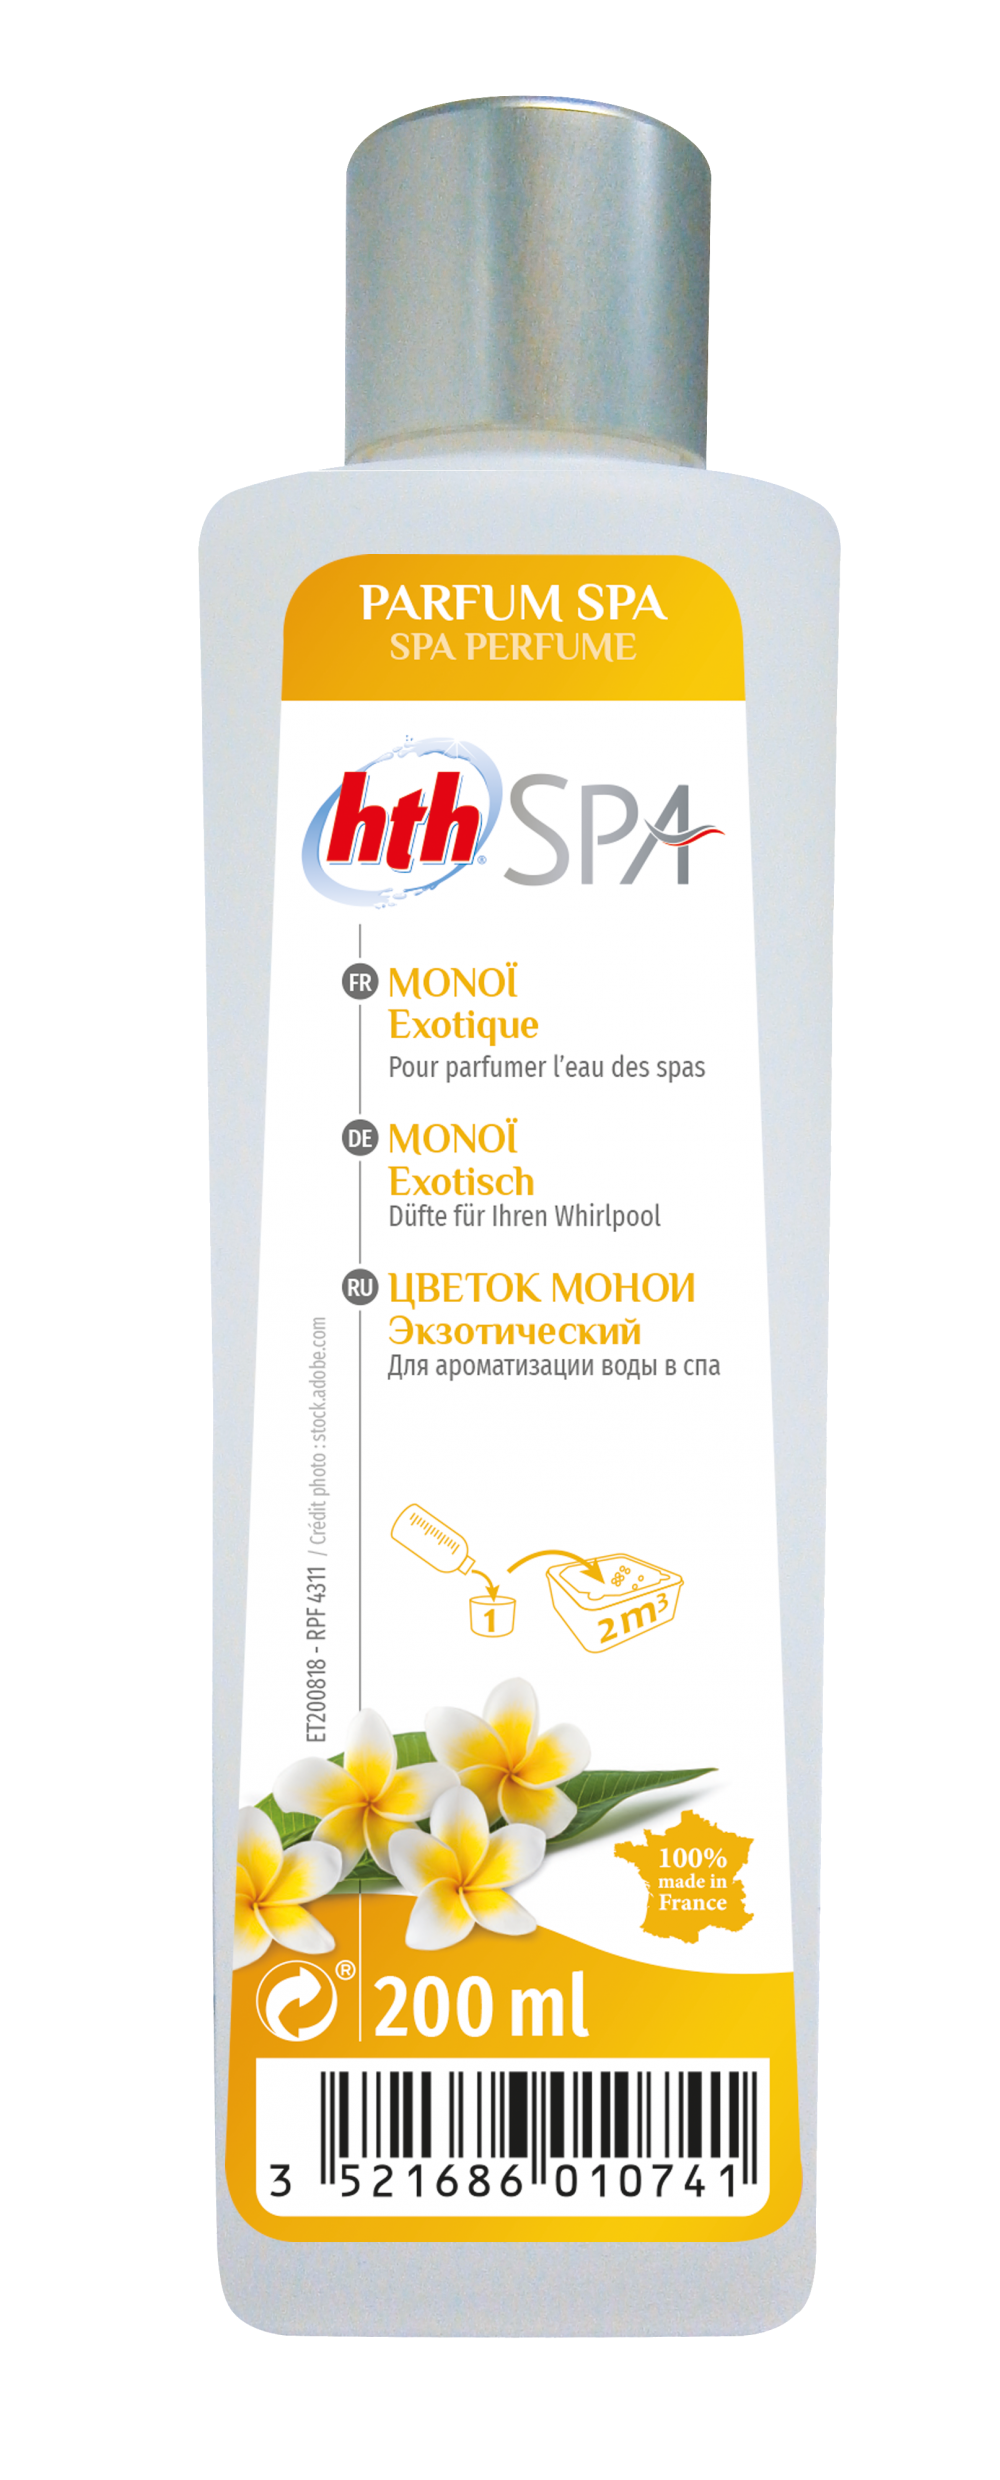 HTH Spa parfum 200ml, HTH